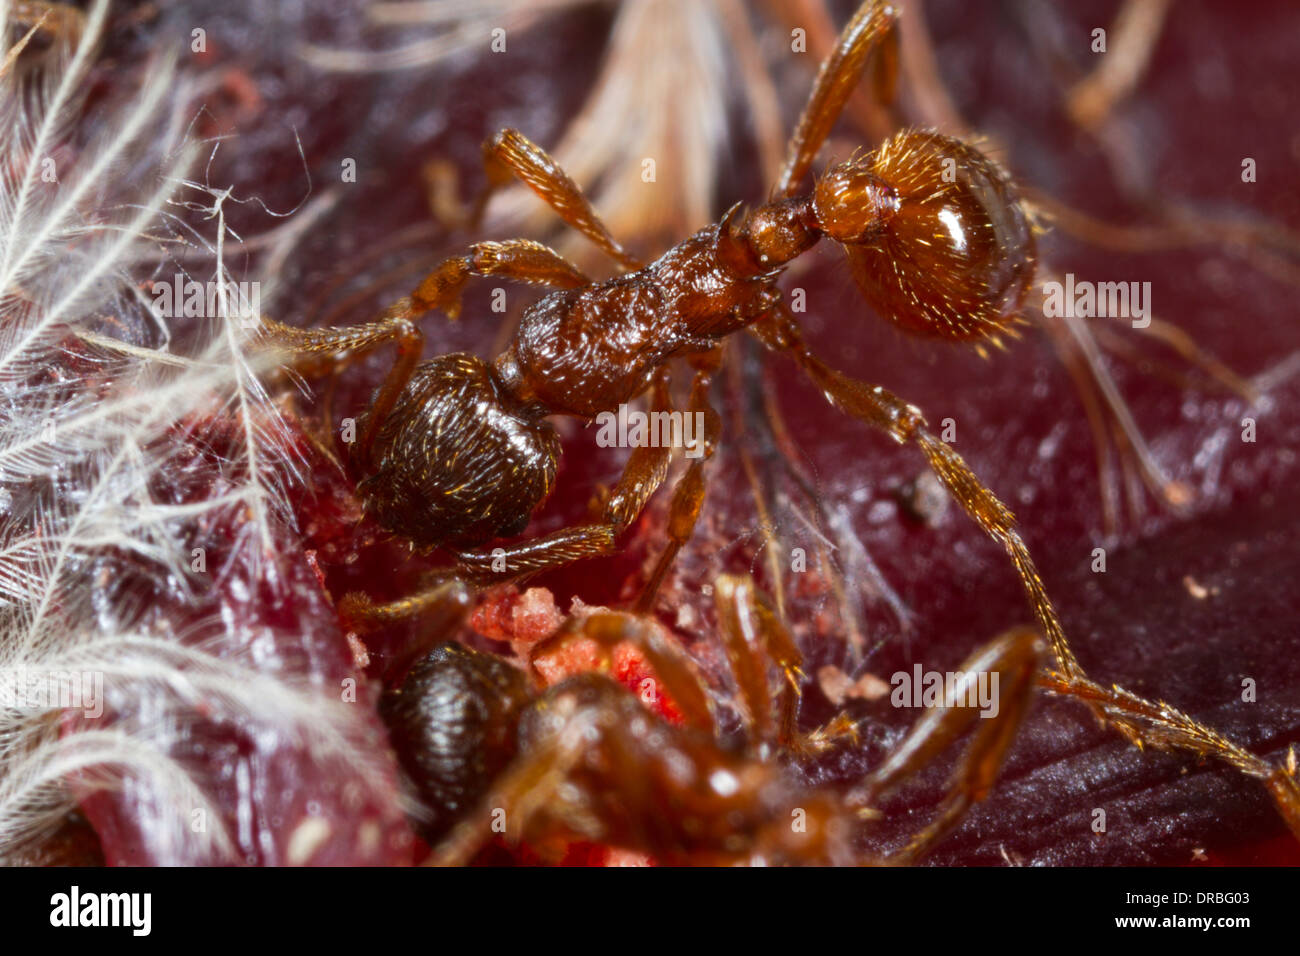 Red Ant (Myrmica rubra) travailleurs adultes se nourrissant d'un cadavre d'oiseau la mortalité sur la route. Powys, Pays de Galles. En août. Banque D'Images